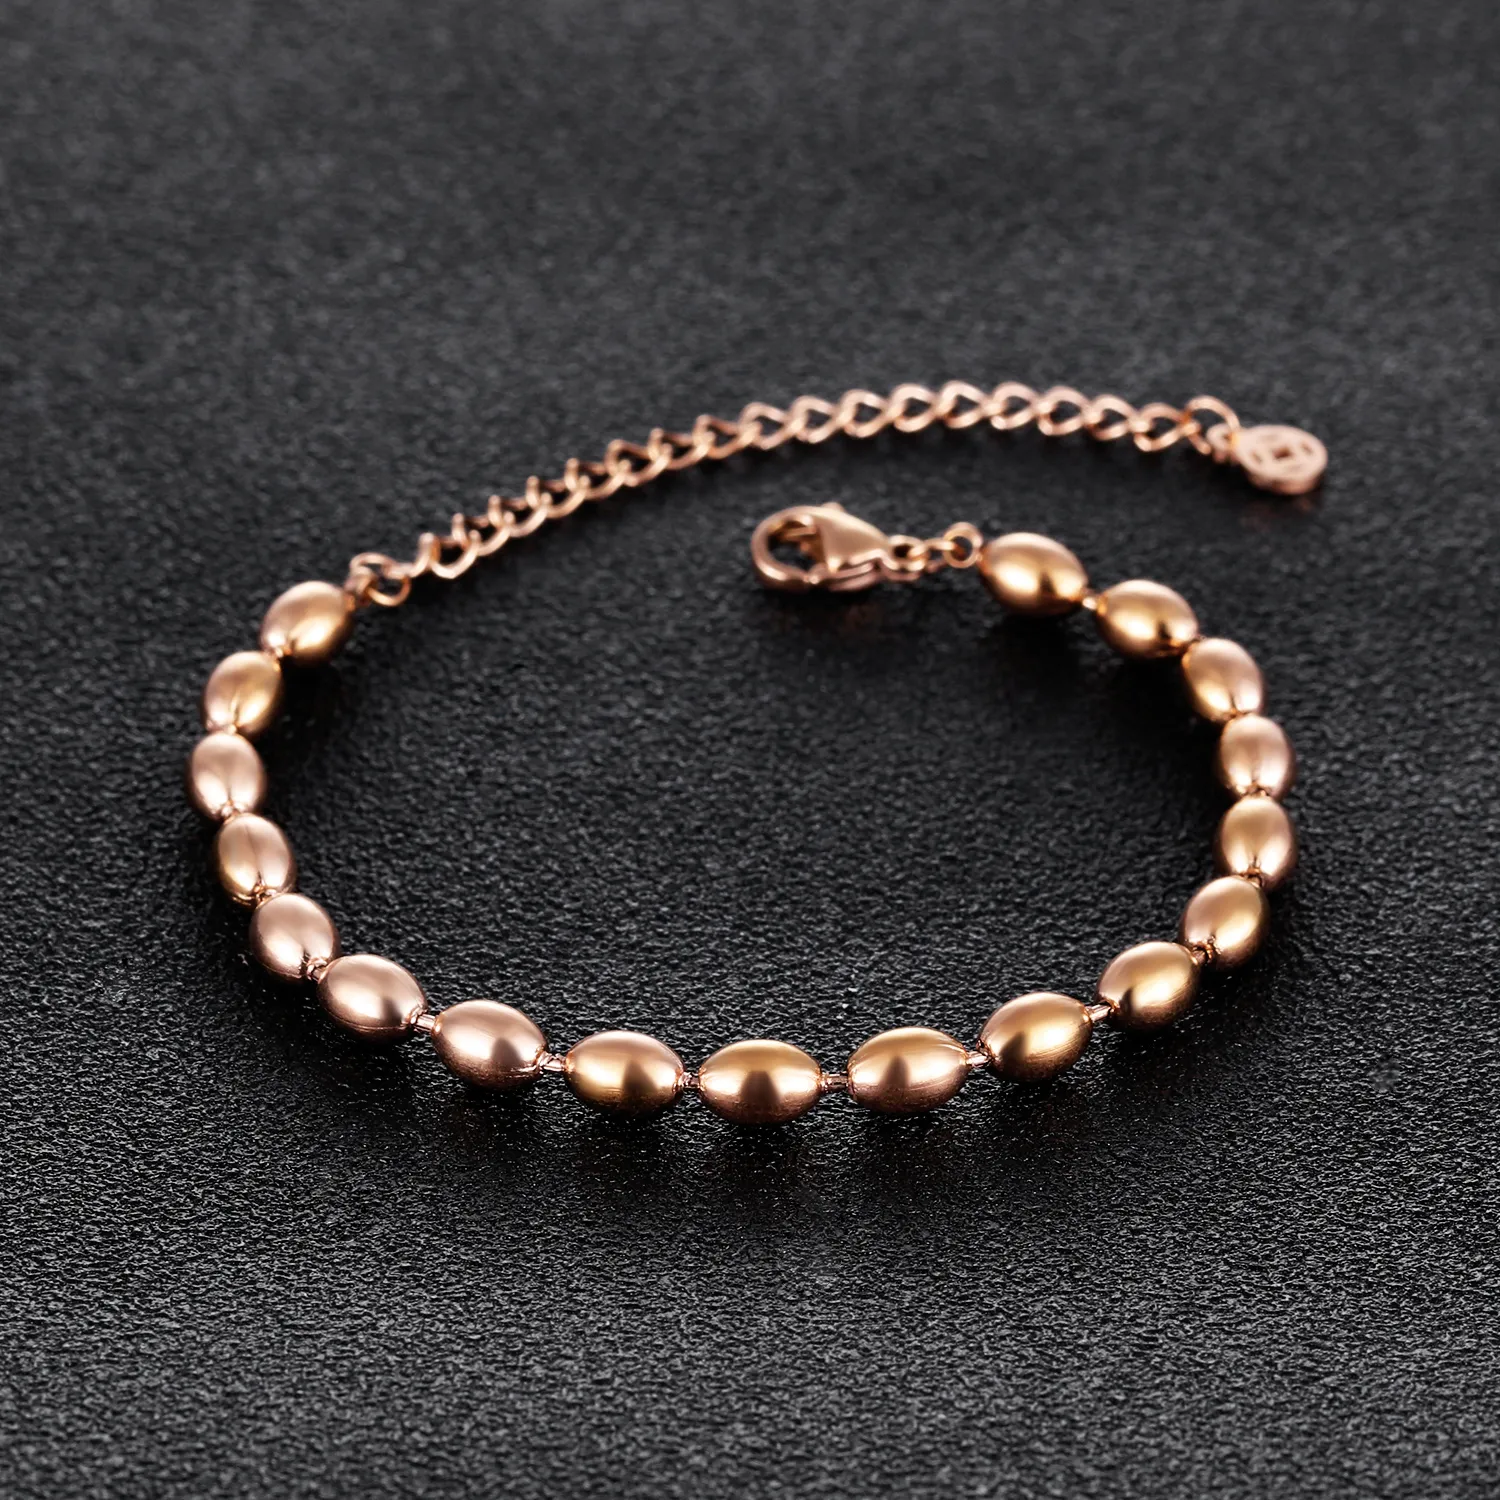 Regalo di amicizia Bracciale con perline in acciaio inossidabile oro rosa con chiusura a moschettone, lunghezza 150 mm + catena di estensione 50 mm